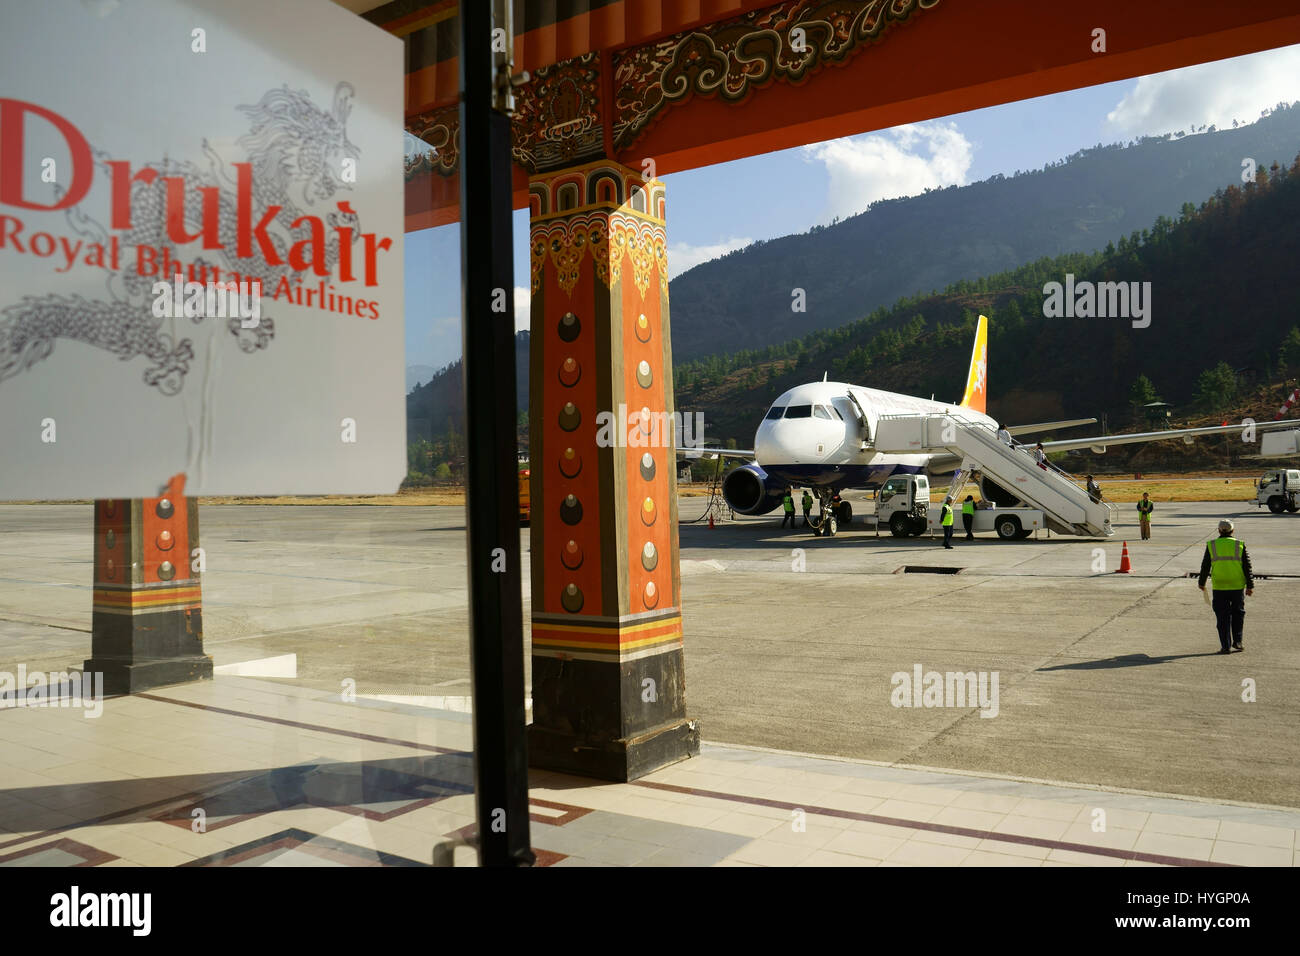 Drukair Bhjutan Royal Airlines avion à l'aéroport de Paro tarmac. Bhoutan Banque D'Images